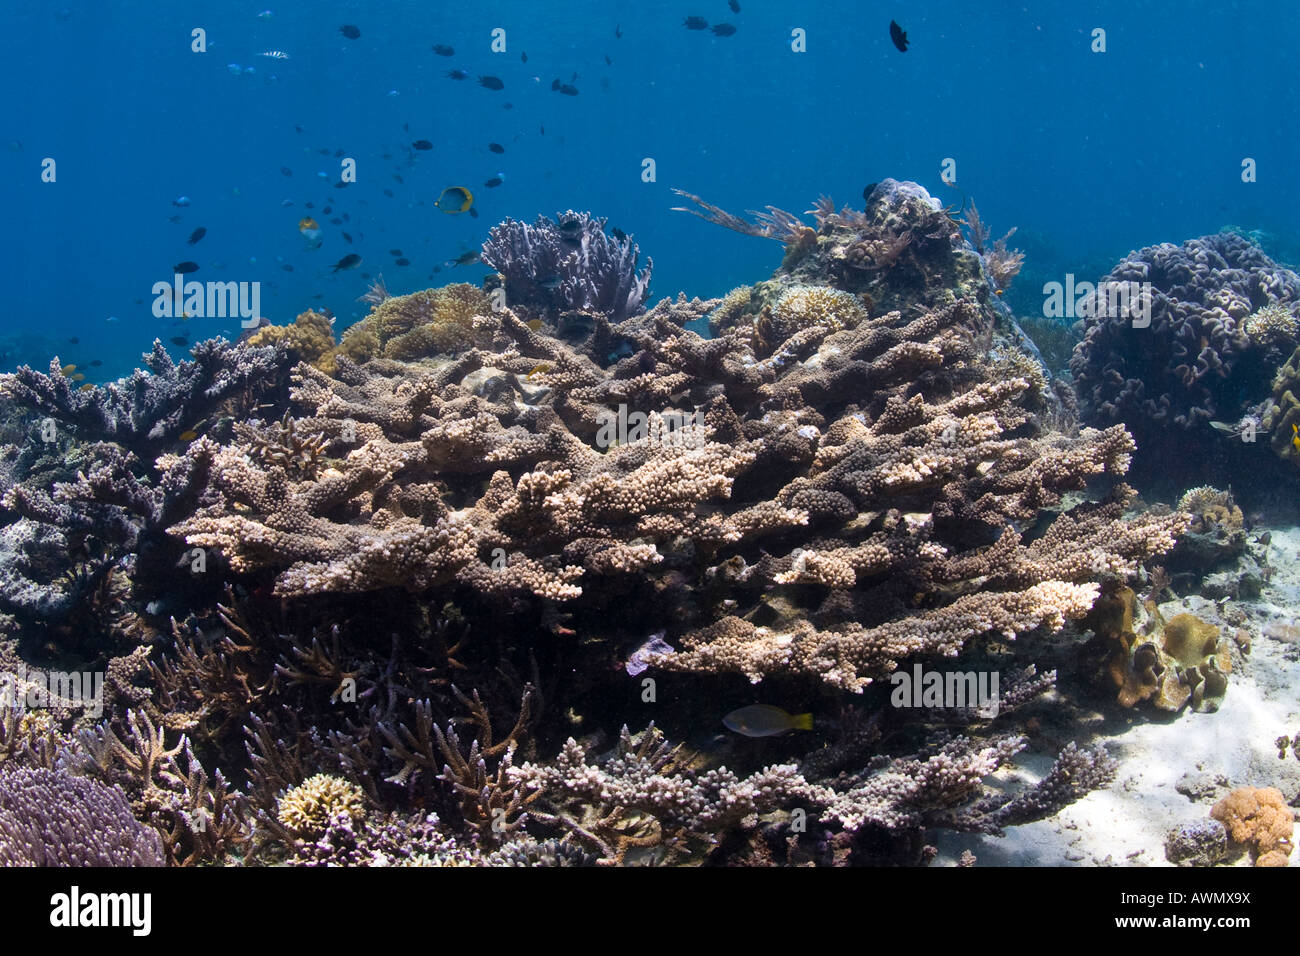 Coral reef nella subacquea parco nazionale di Bunaken, Sulawesi, Indonesia. Foto Stock